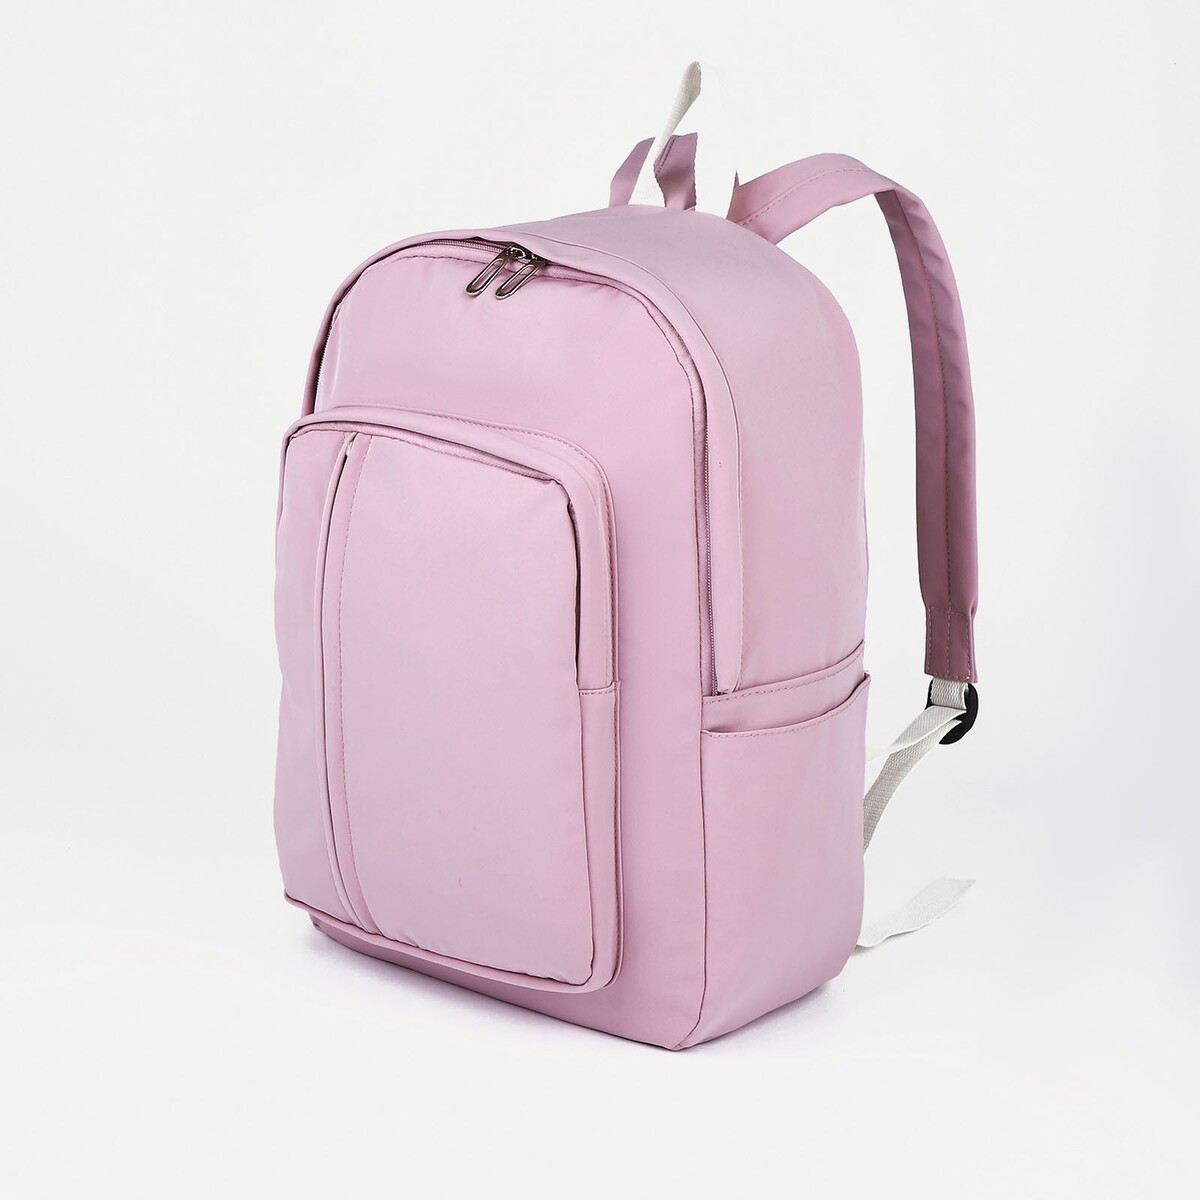 Рюкзак молодежный из текстиля на молнии, 5 карманов, цвет розовый рюкзак школьный из текстиля на молнии 5 карманов розовый